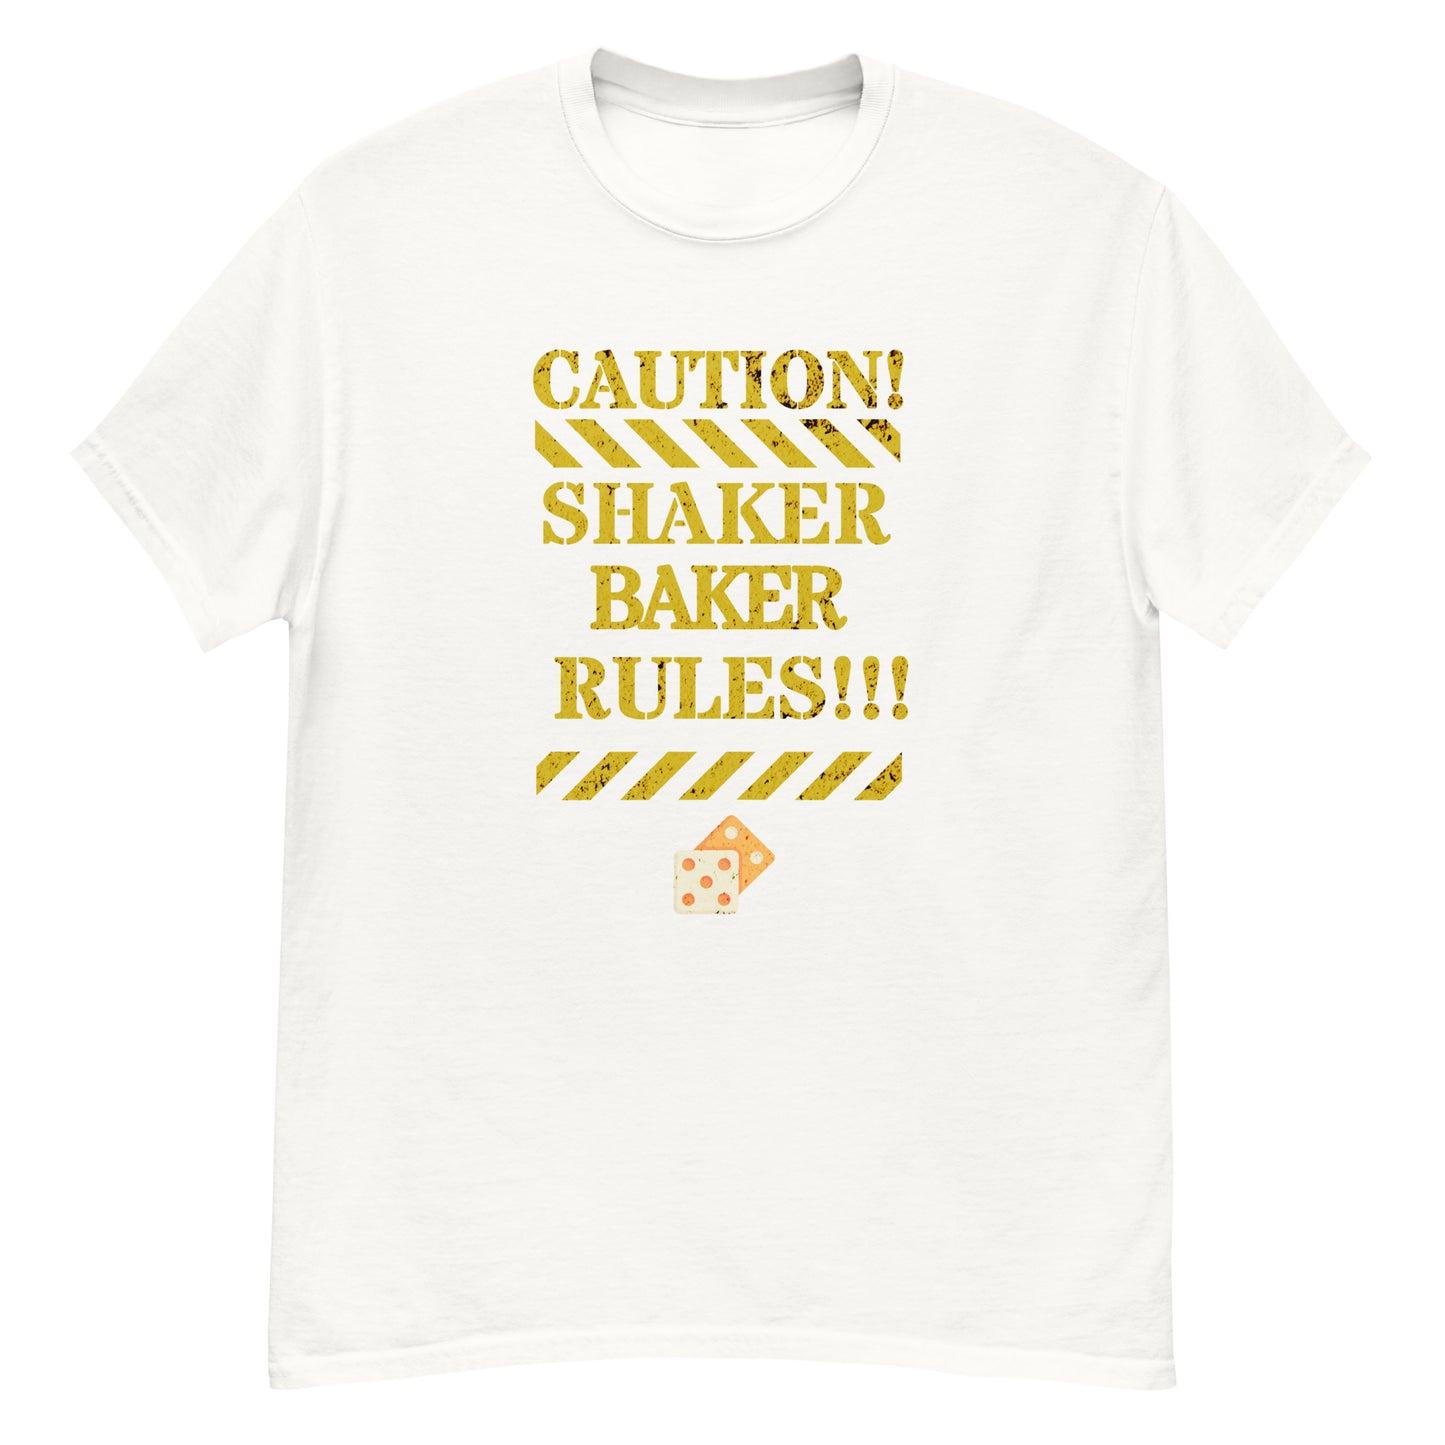 Shaker Baker Rules!!!